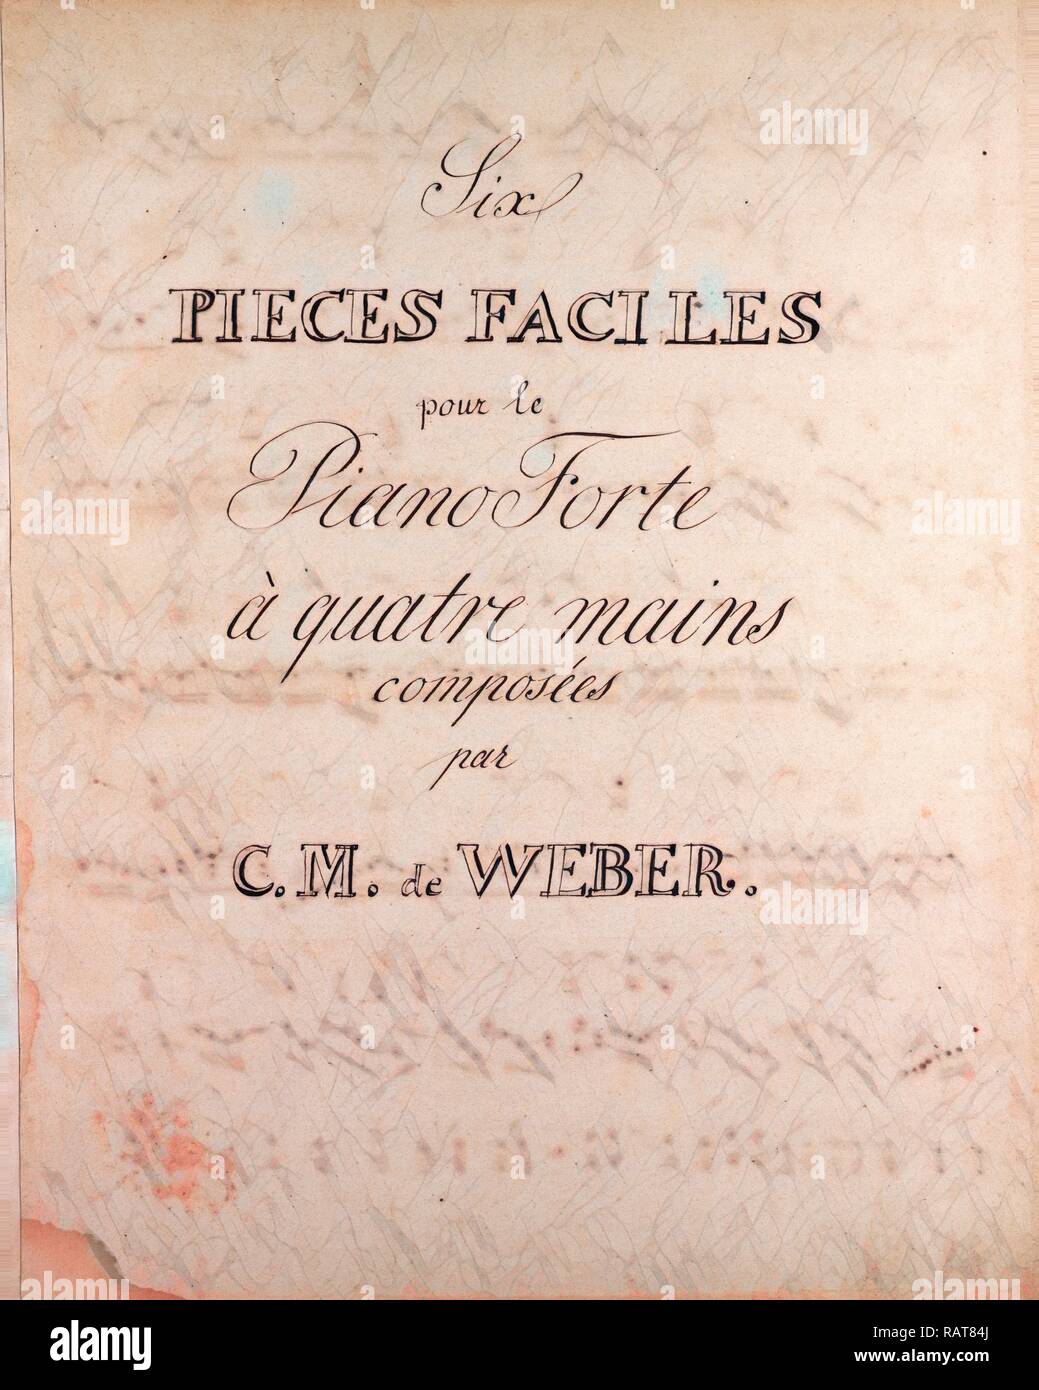 Six pieces faciles pour le Piano Forte a quatre main composed by C.M. de Weber, handwritten sheet music, music notes reimagined Stock Photo